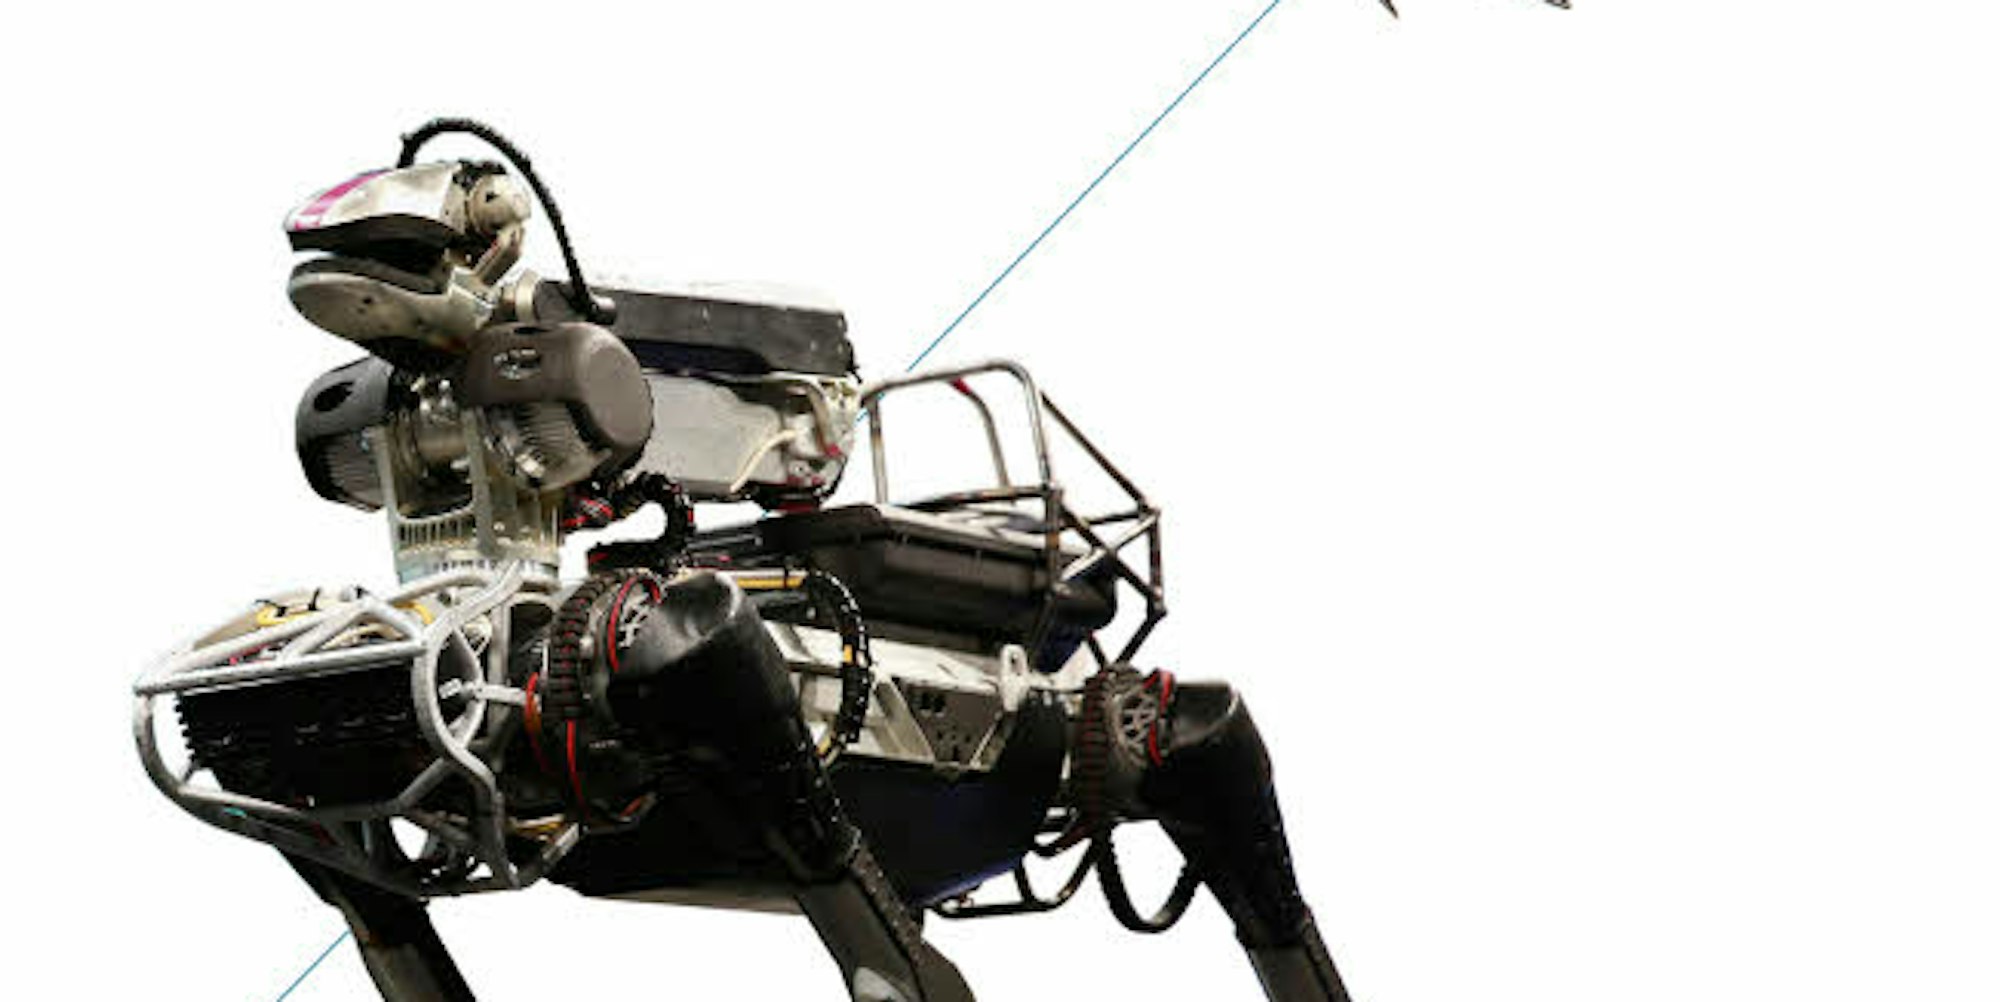 Derzeit Vorbild bei den Mechanismen zur Stabilisierung: der Roboter SpotMini von Boston Dynamics 